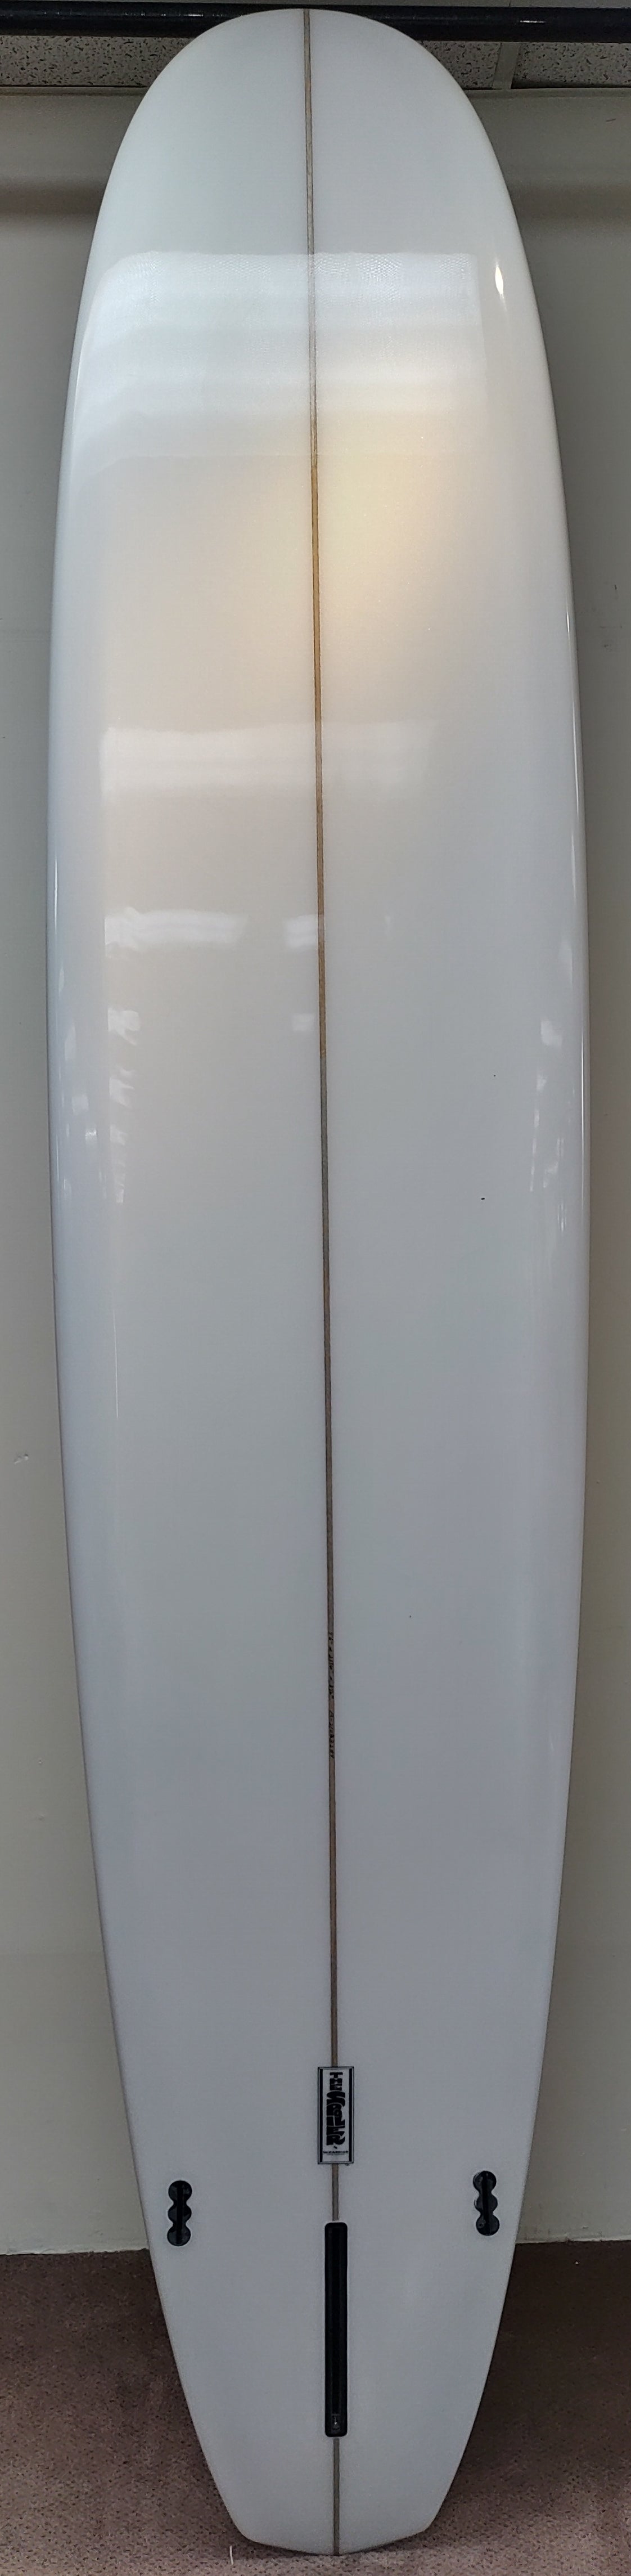 The Spoiler 9'6 Longboard Surfboard